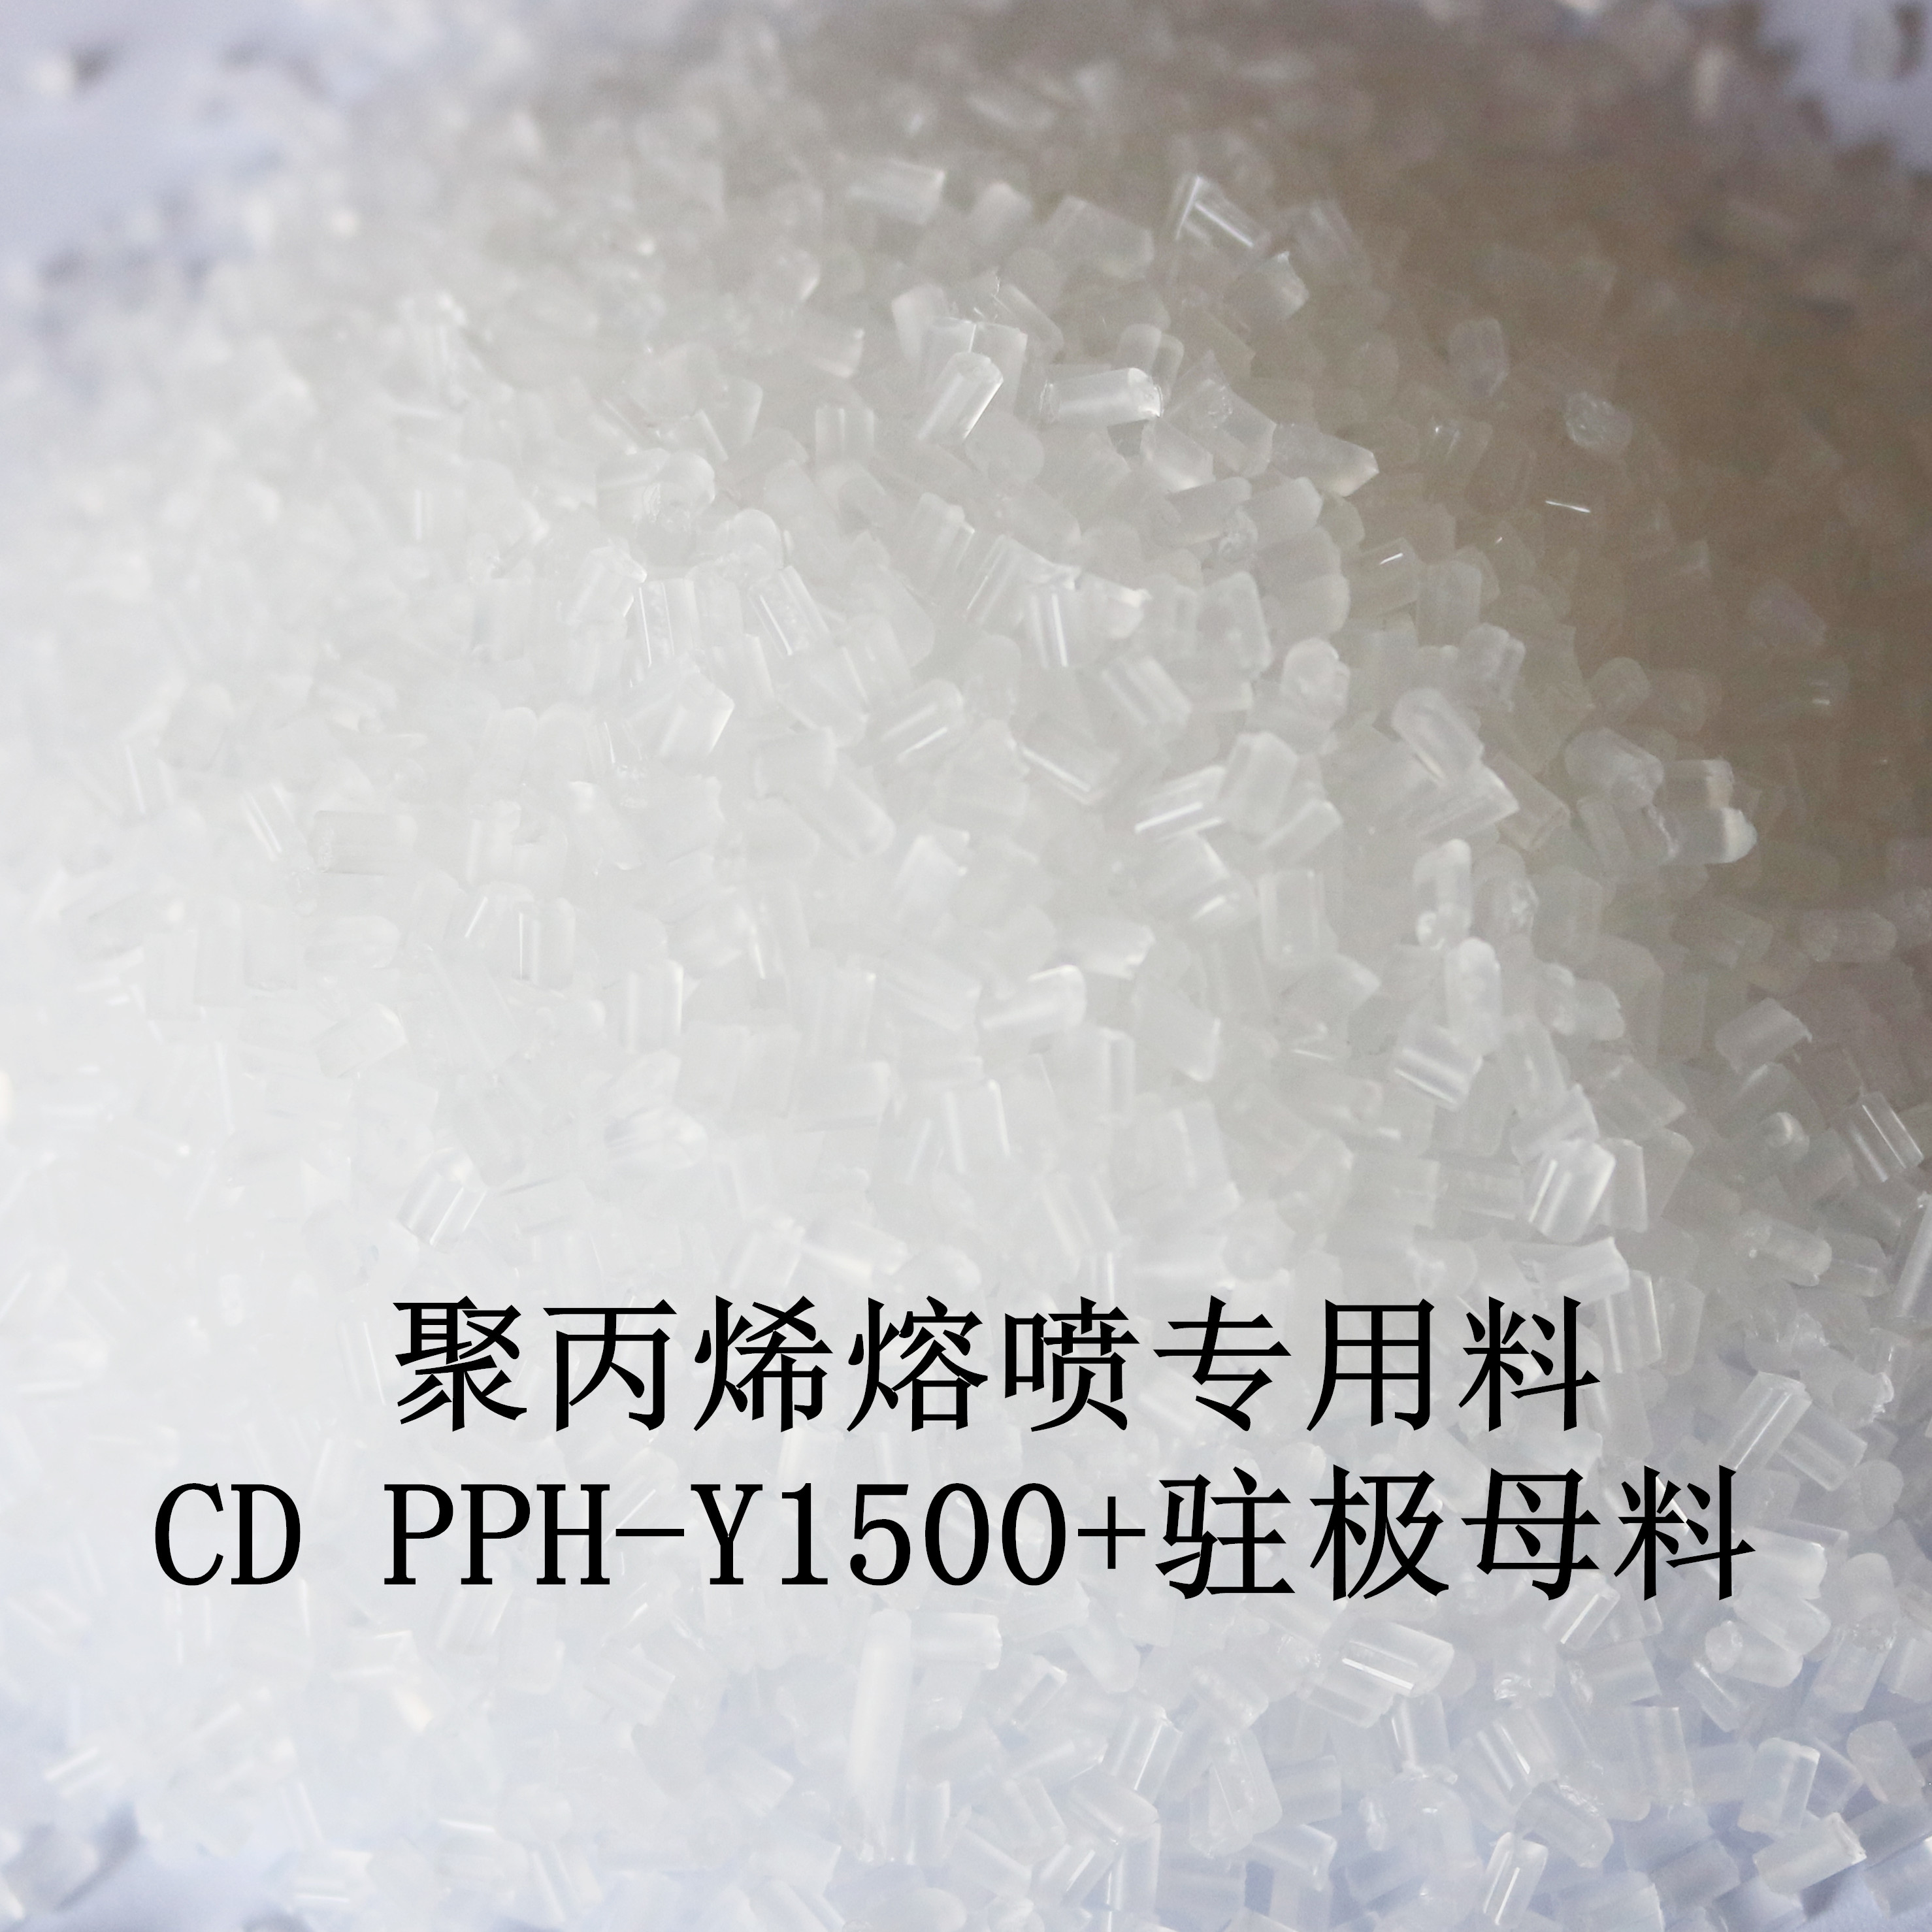 聚丙烯熔噴專用料  CD PPH-Y1500+駐極母料